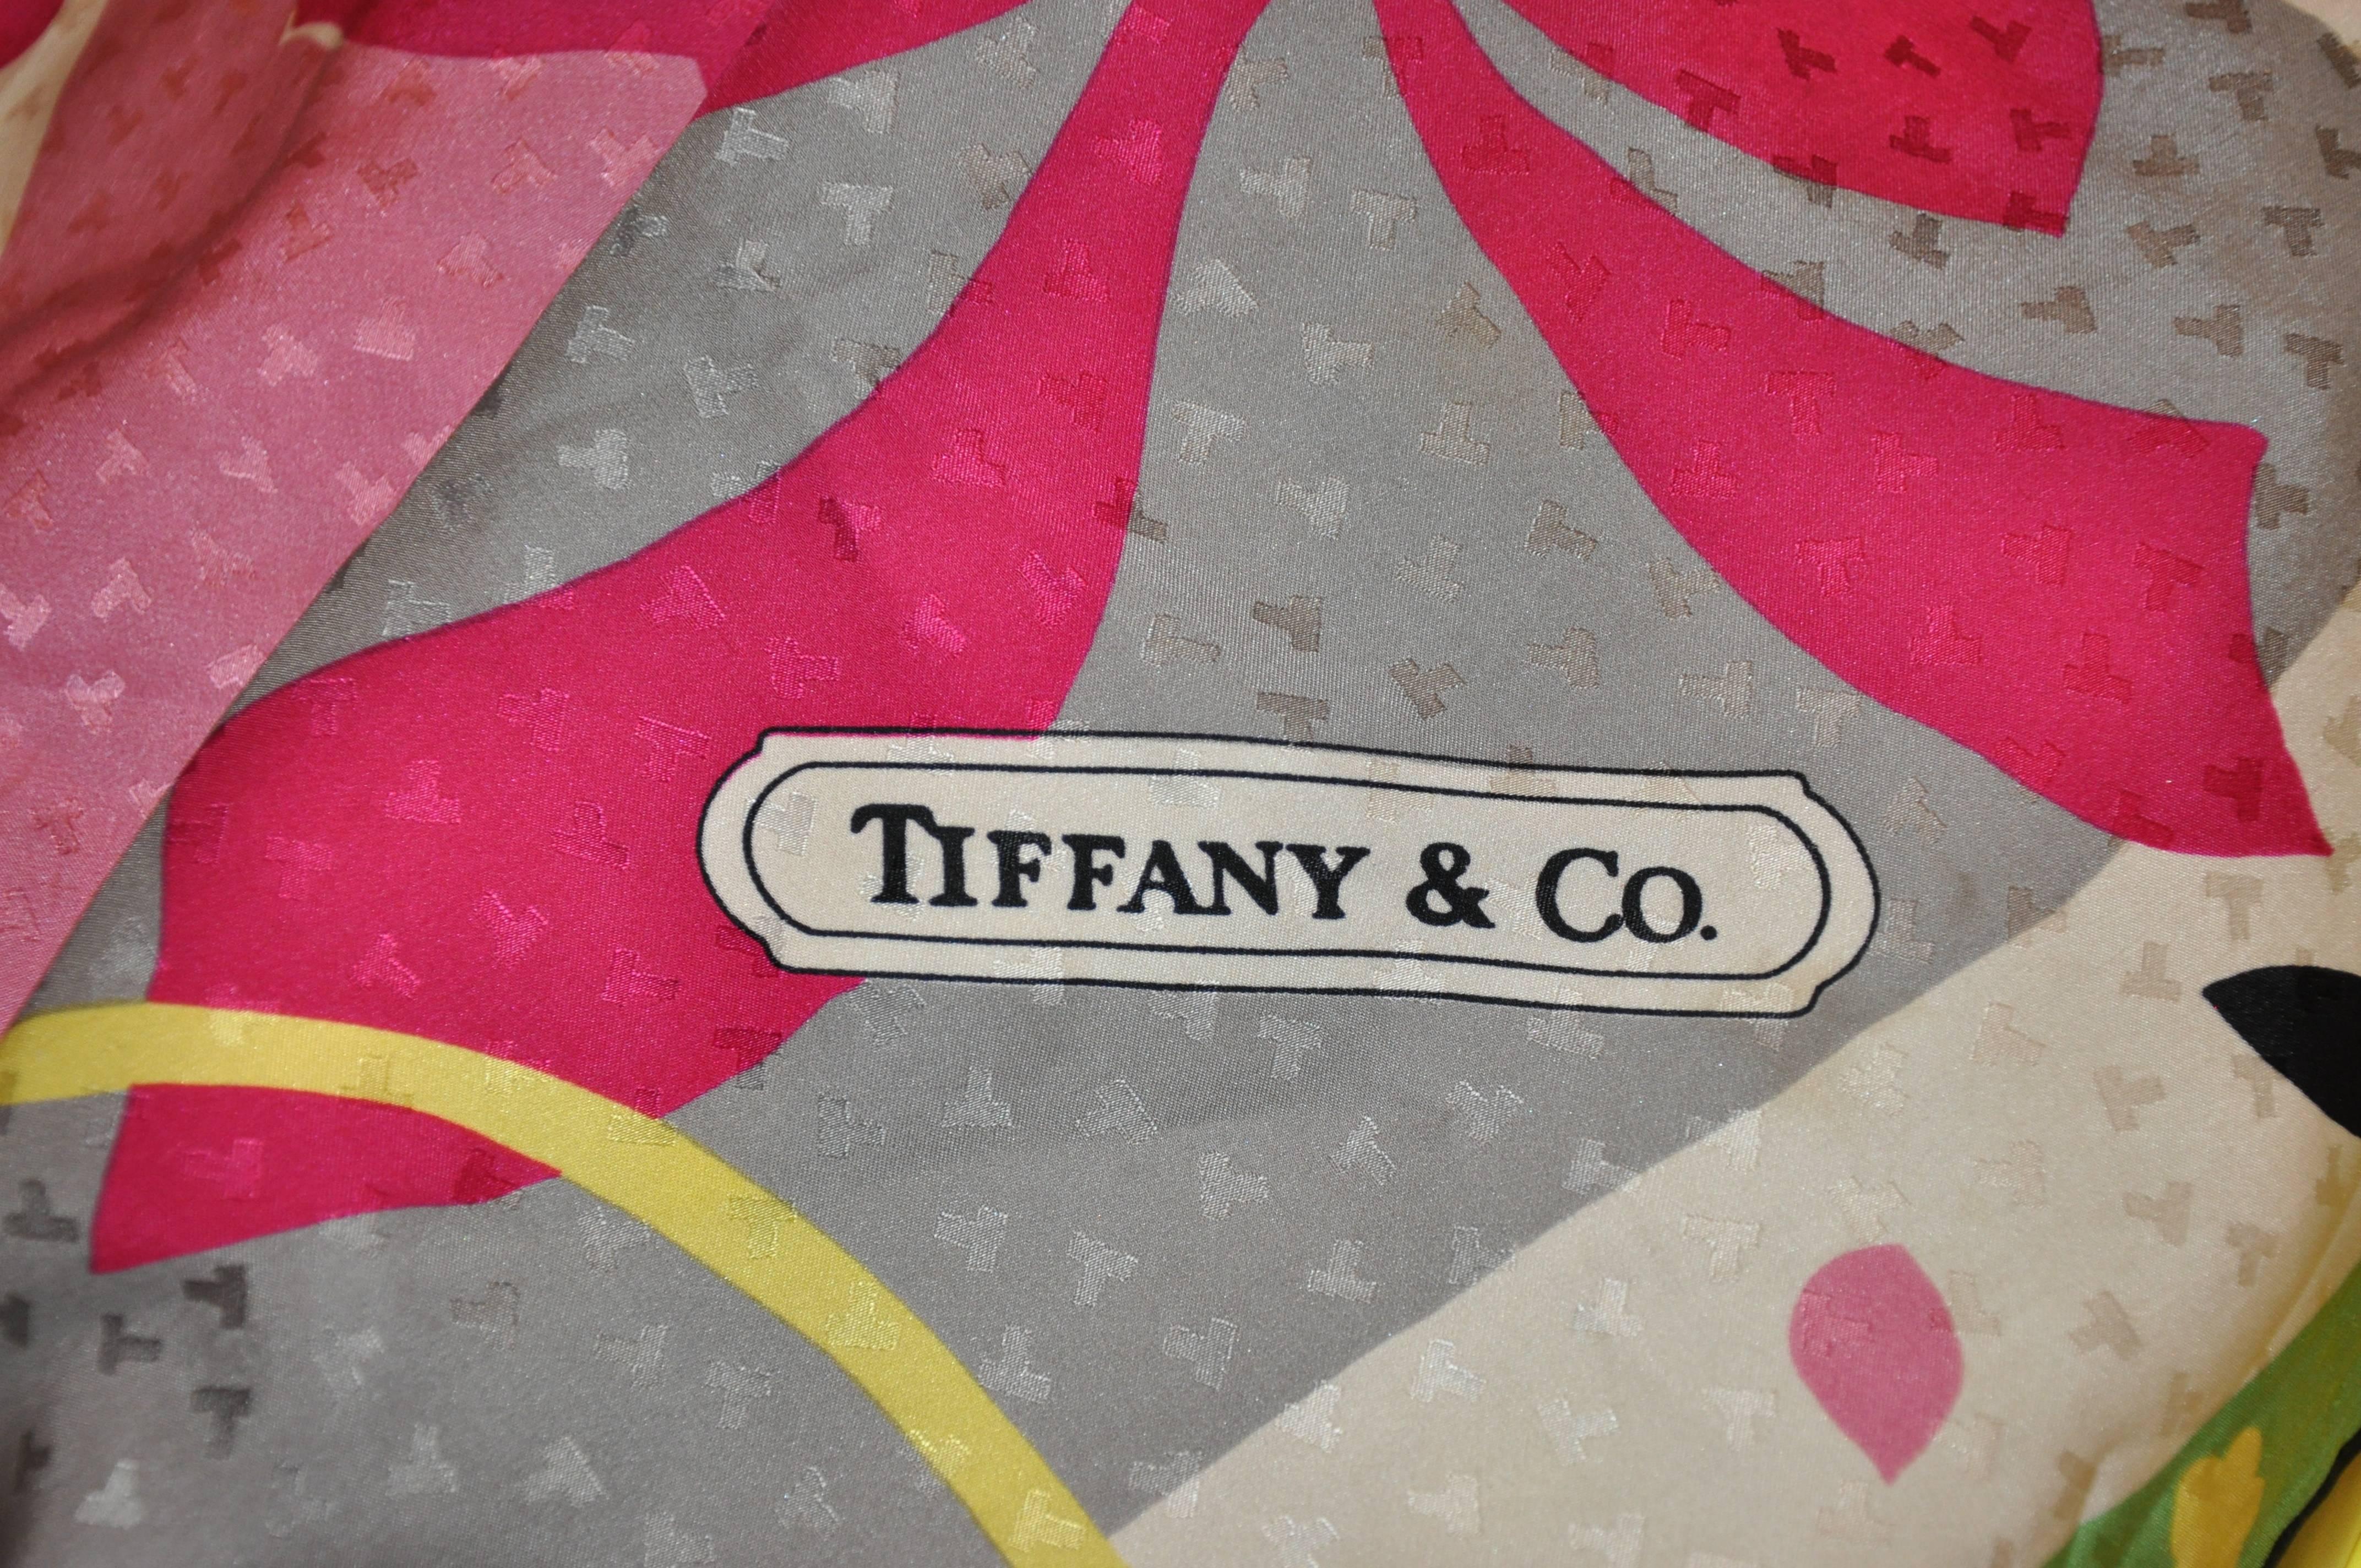        L'écharpe en crêpe de chine de Tiffany & Co, merveilleusement détaillée, est une abstraction multicolore et audacieuse. Elle mesure 34